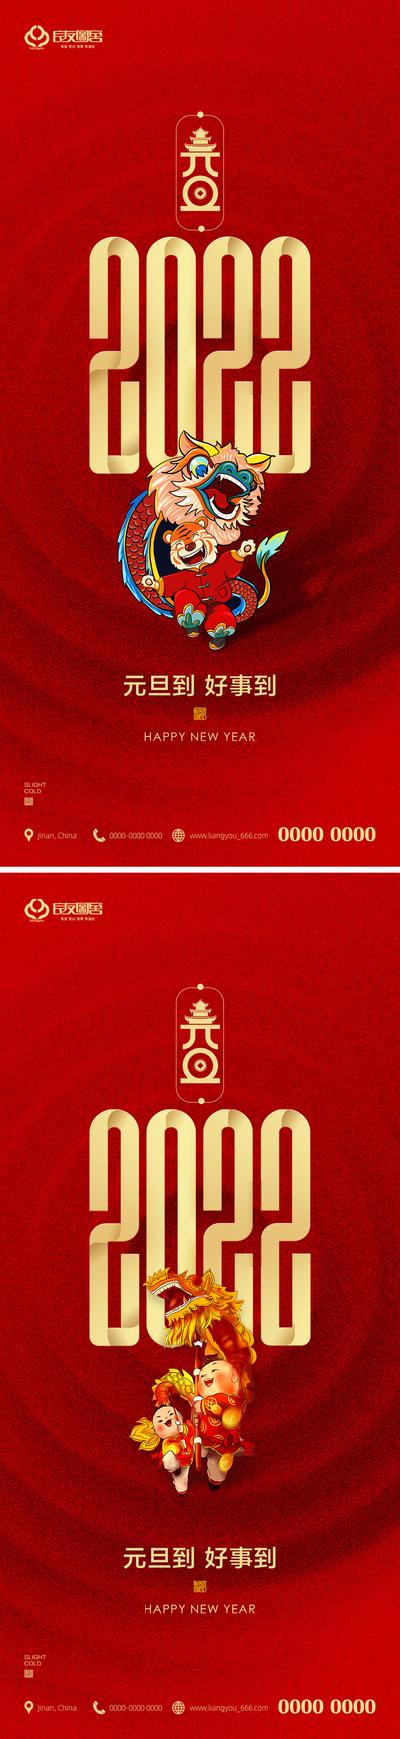 南门网 海报 房地产 元旦节 公历节日 新年 2022 